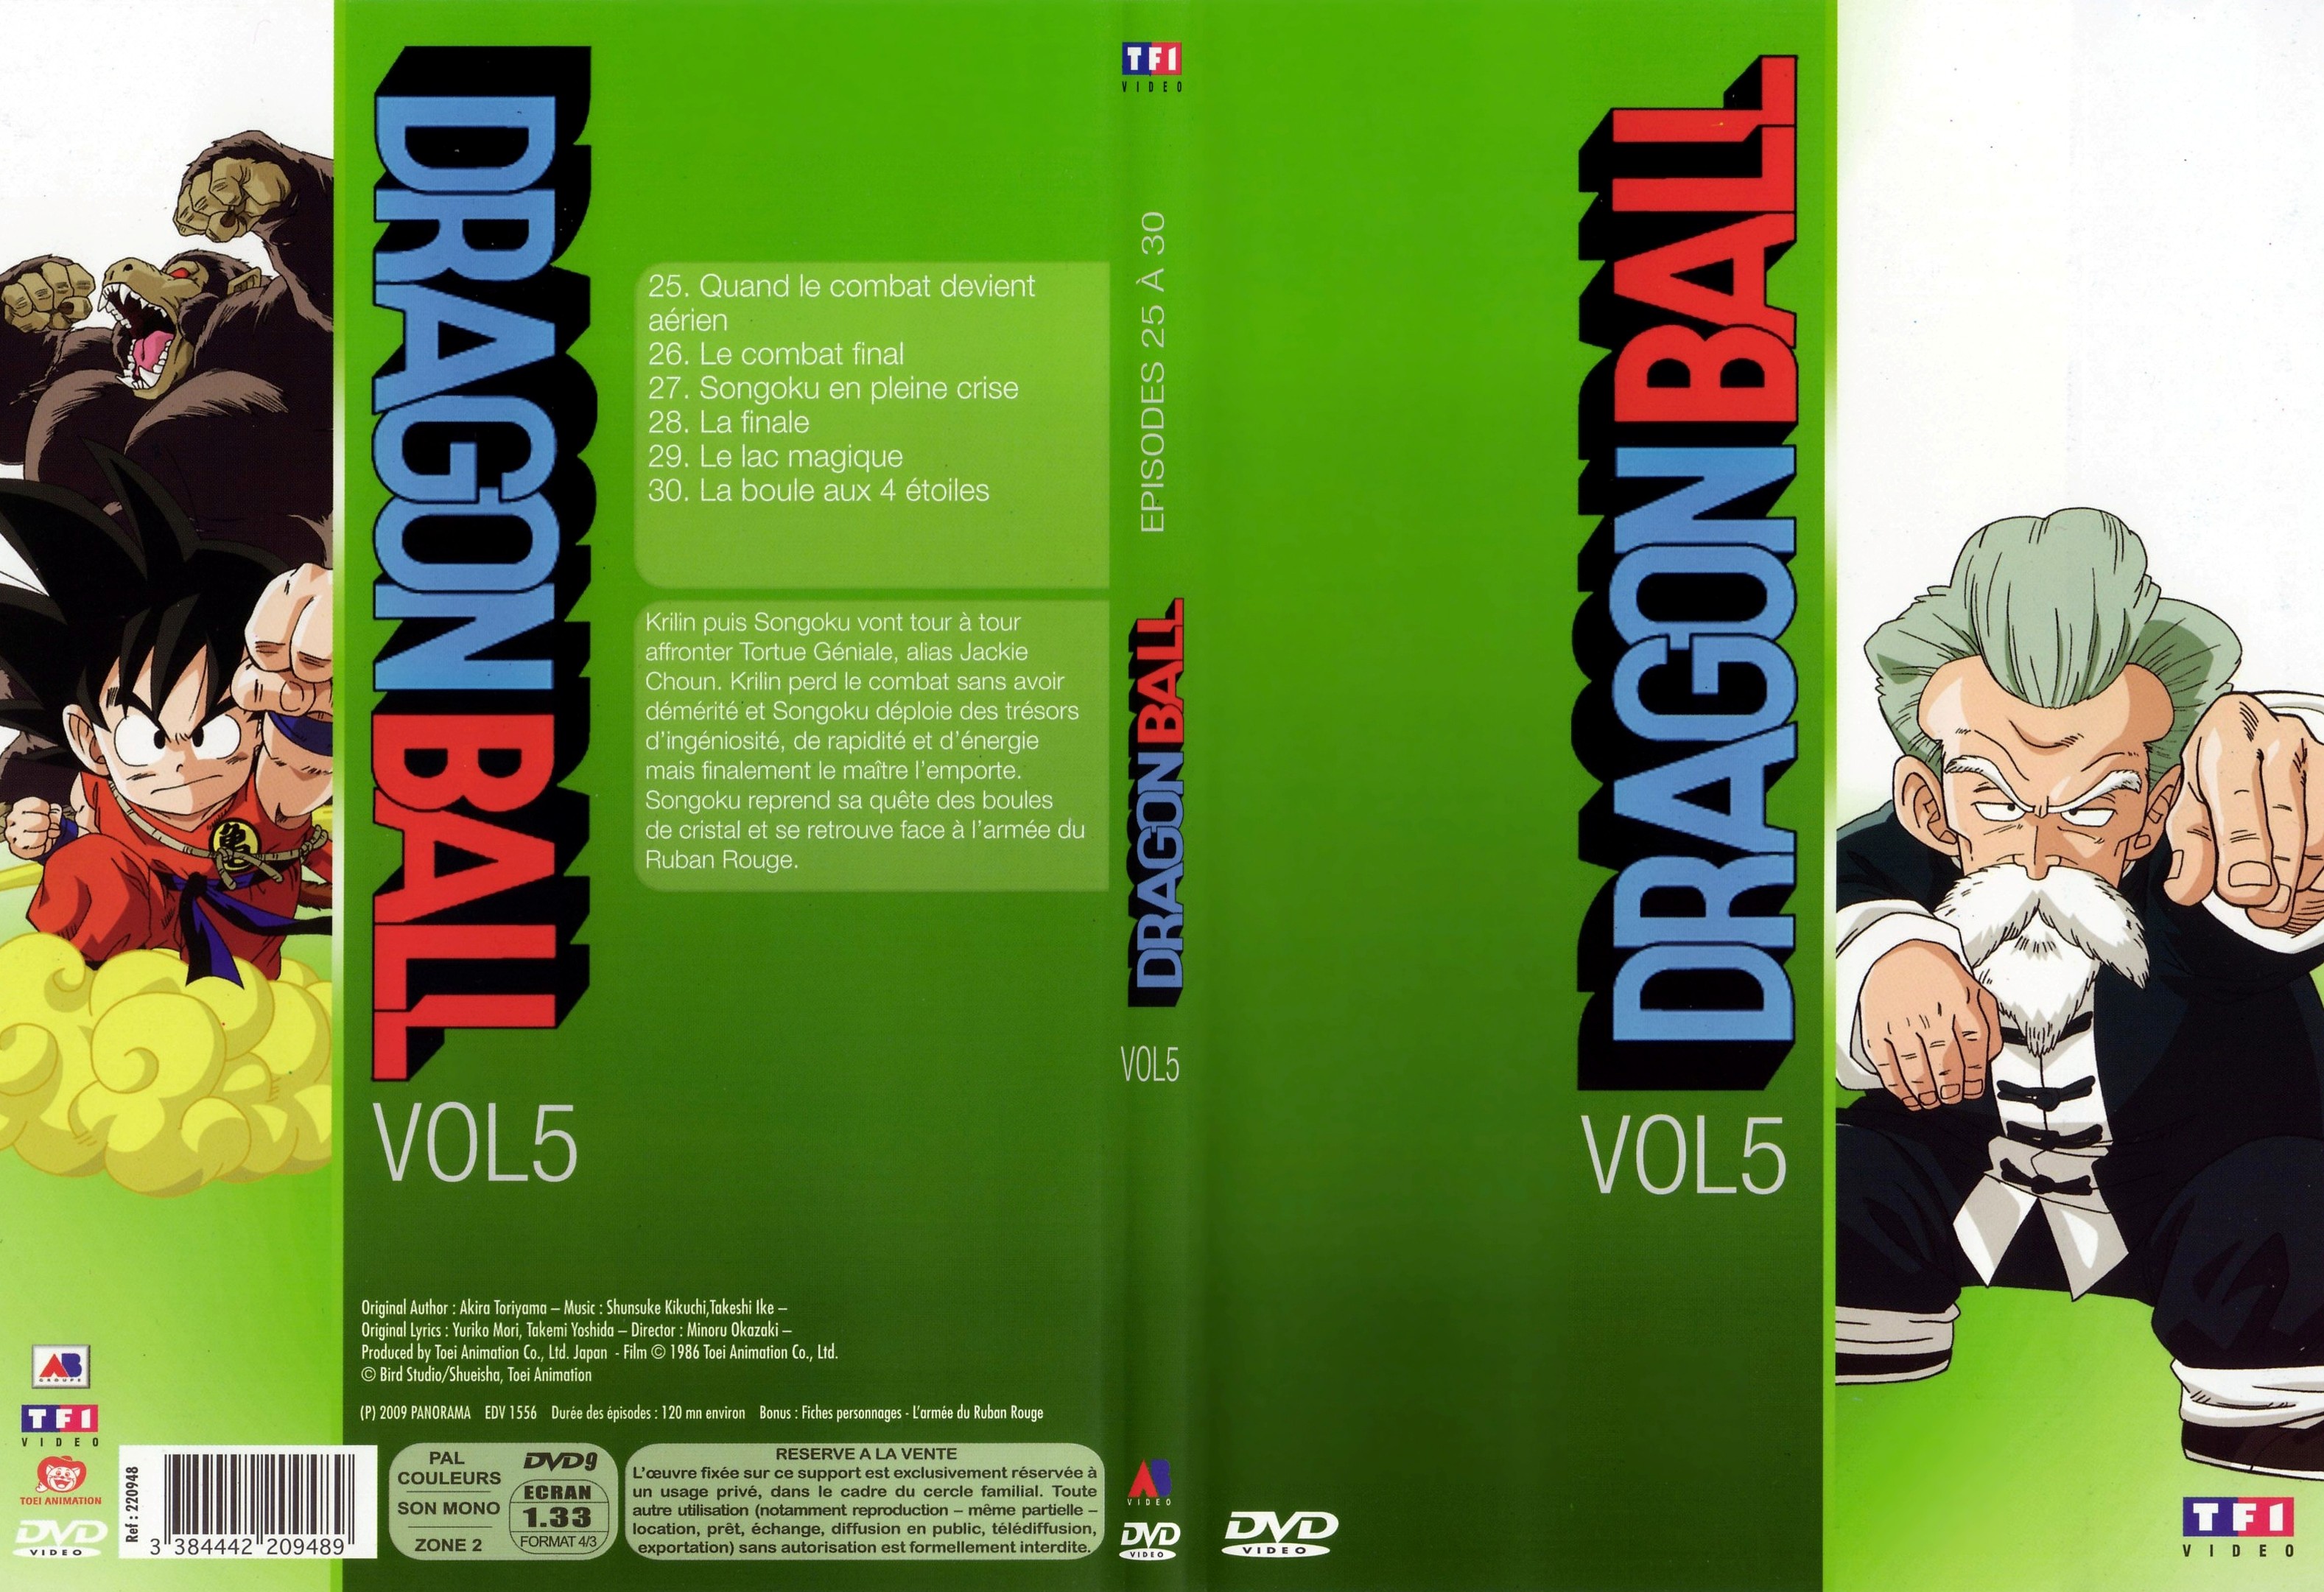 Jaquette DVD Dragon ball vol 5 - SLIM v2